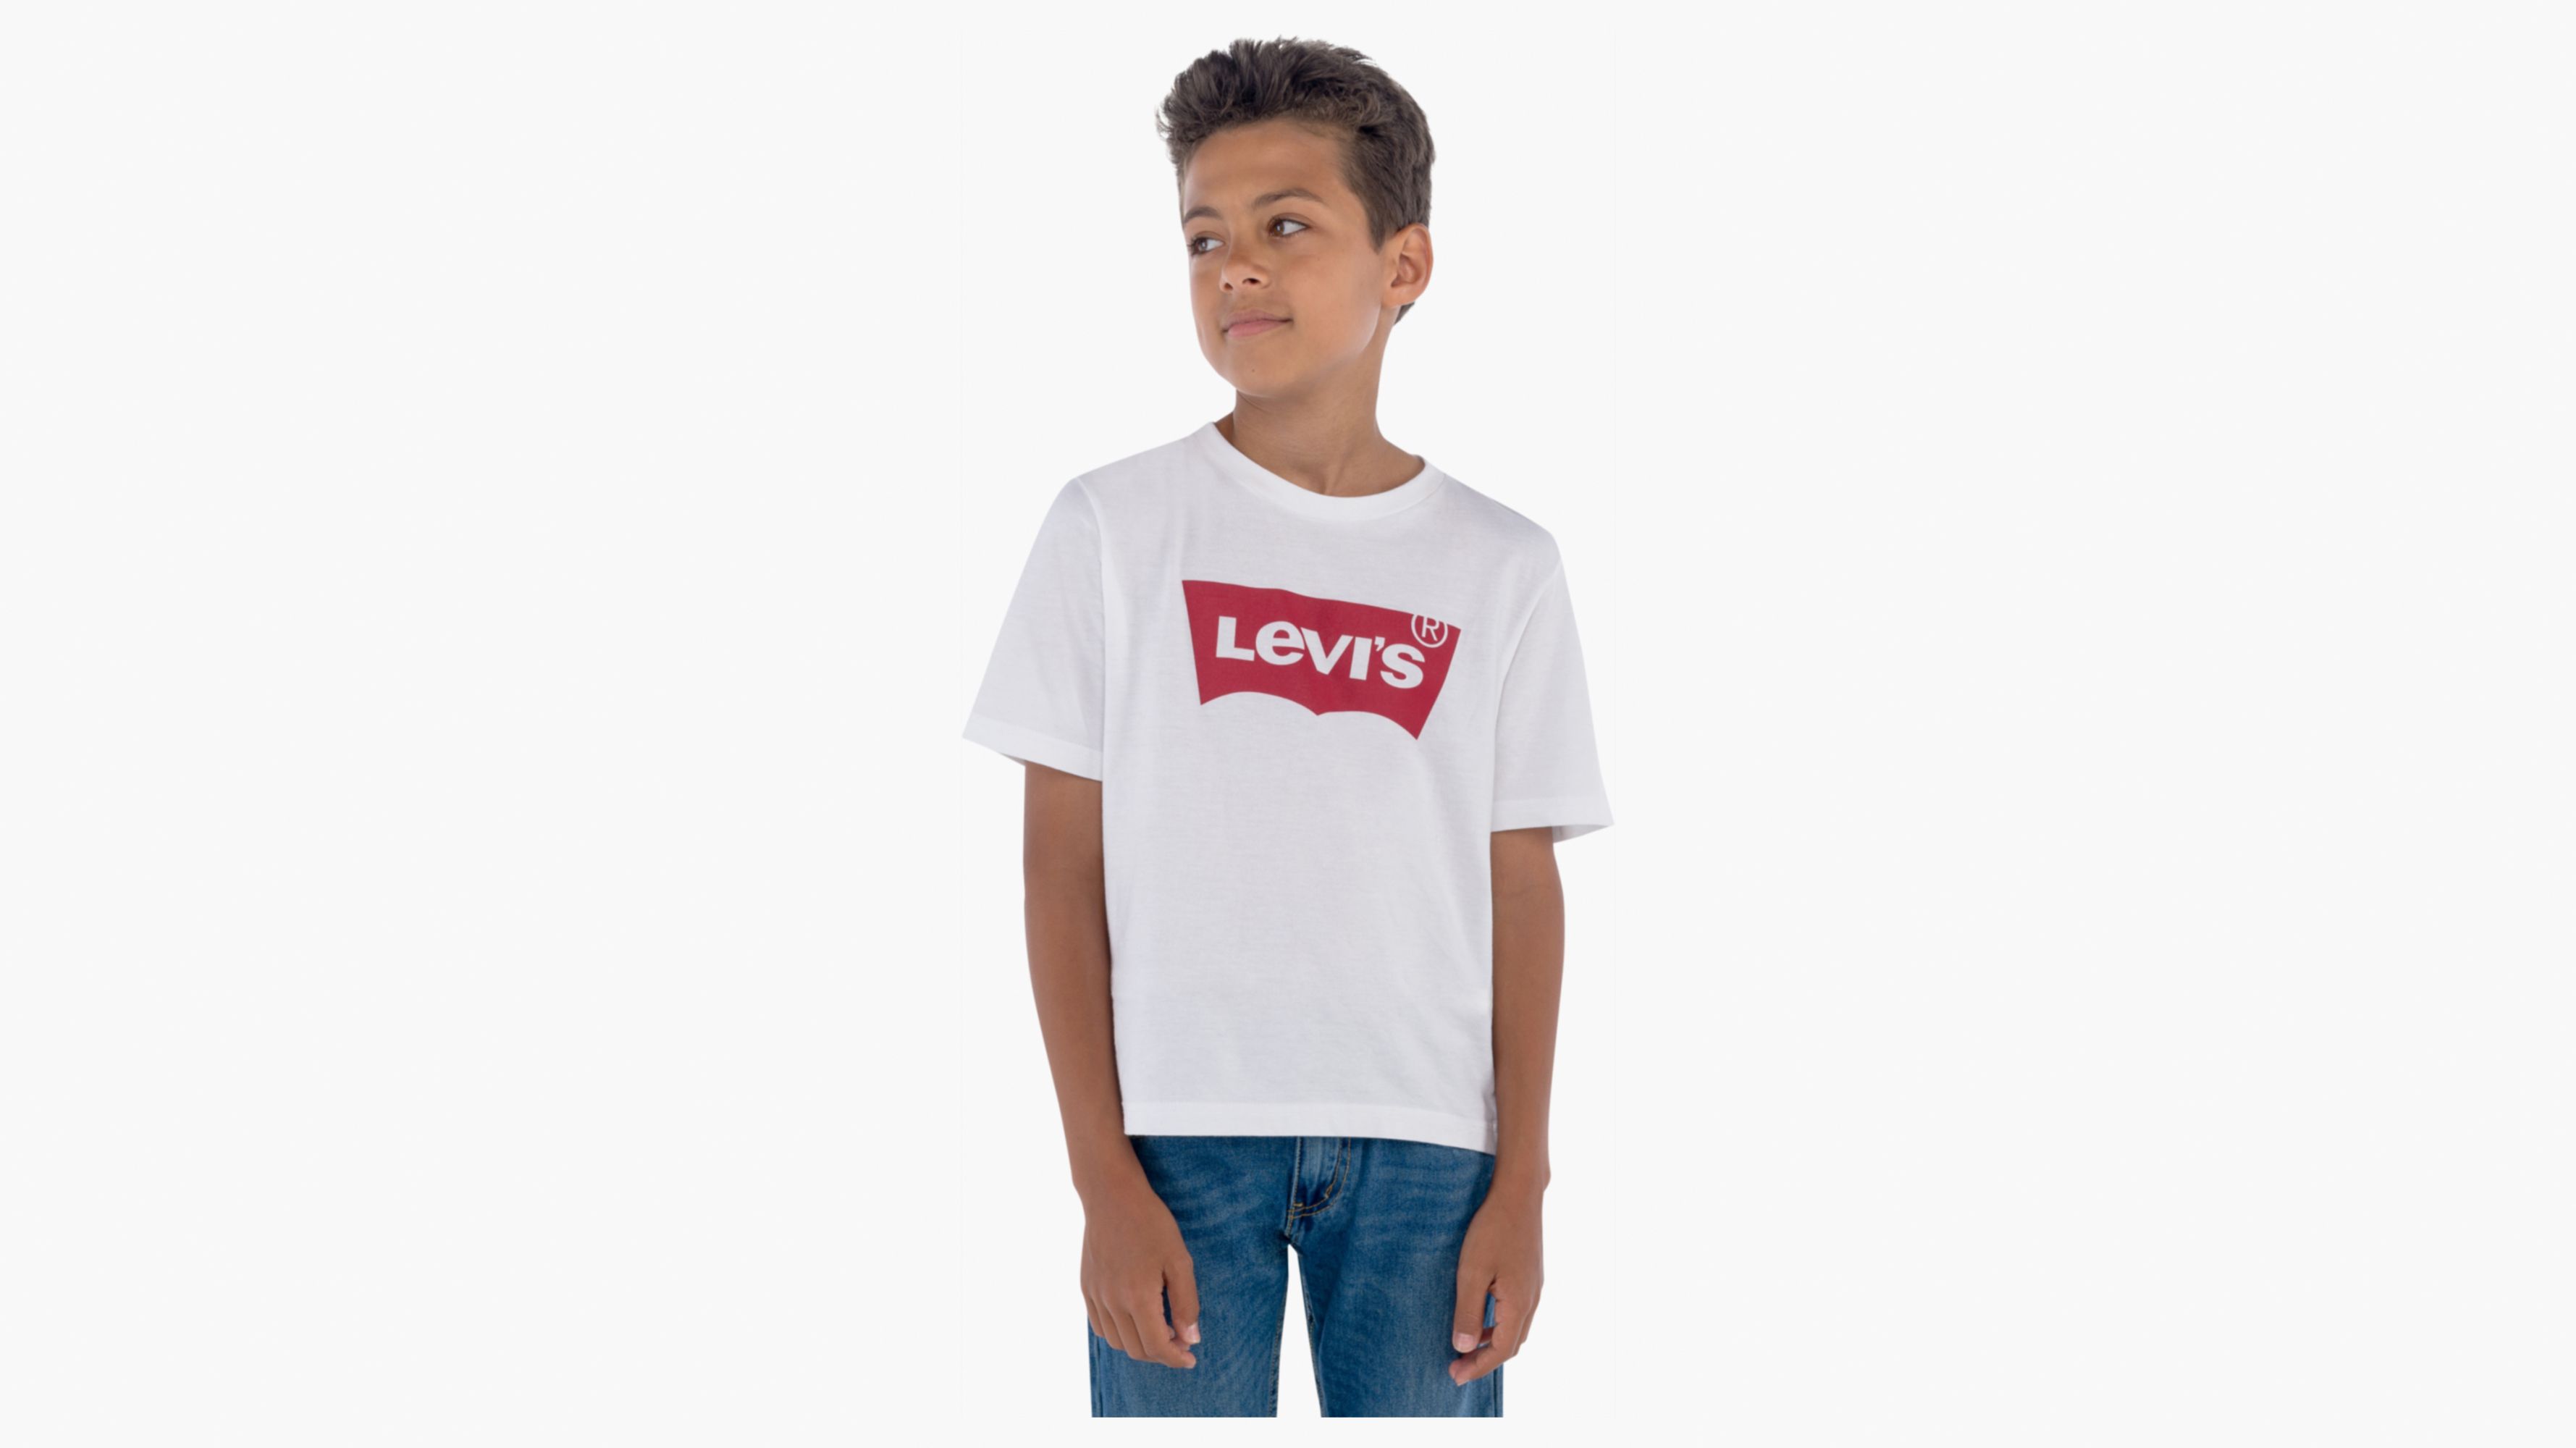 levis childrenswear